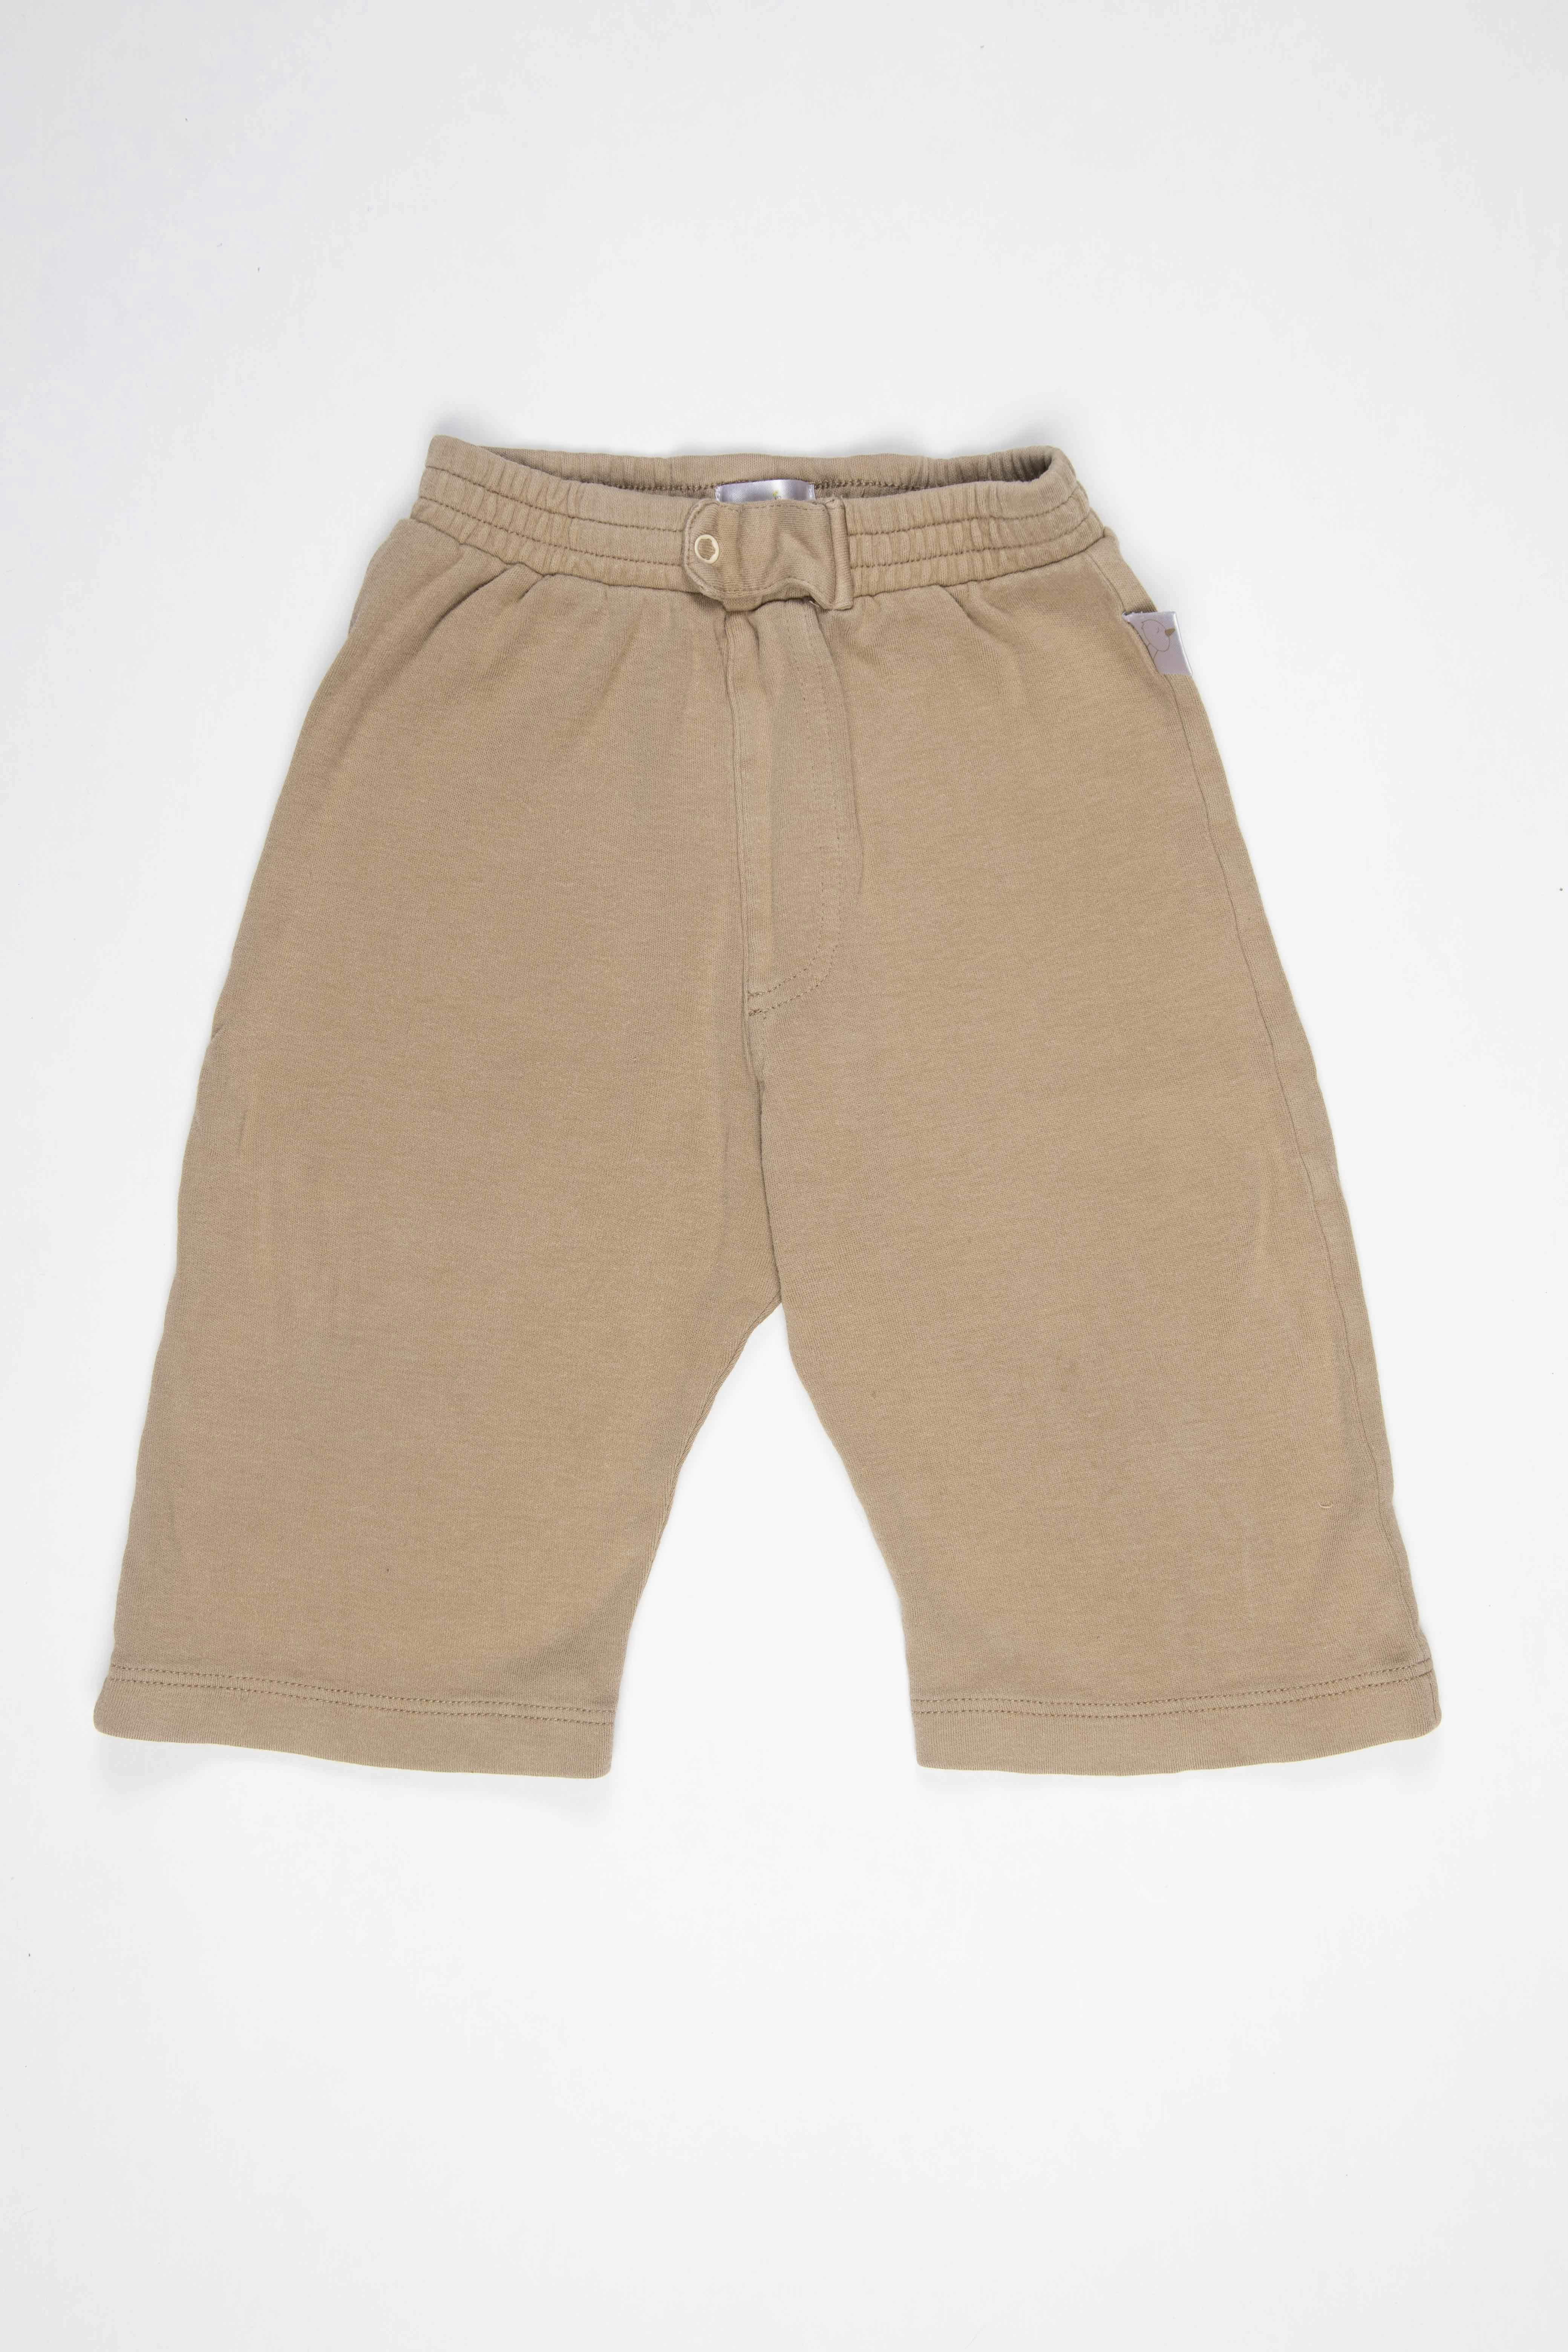 Pantalón marrón claro de algodón, broche delantero, suelto y corto. - Baby Zoo